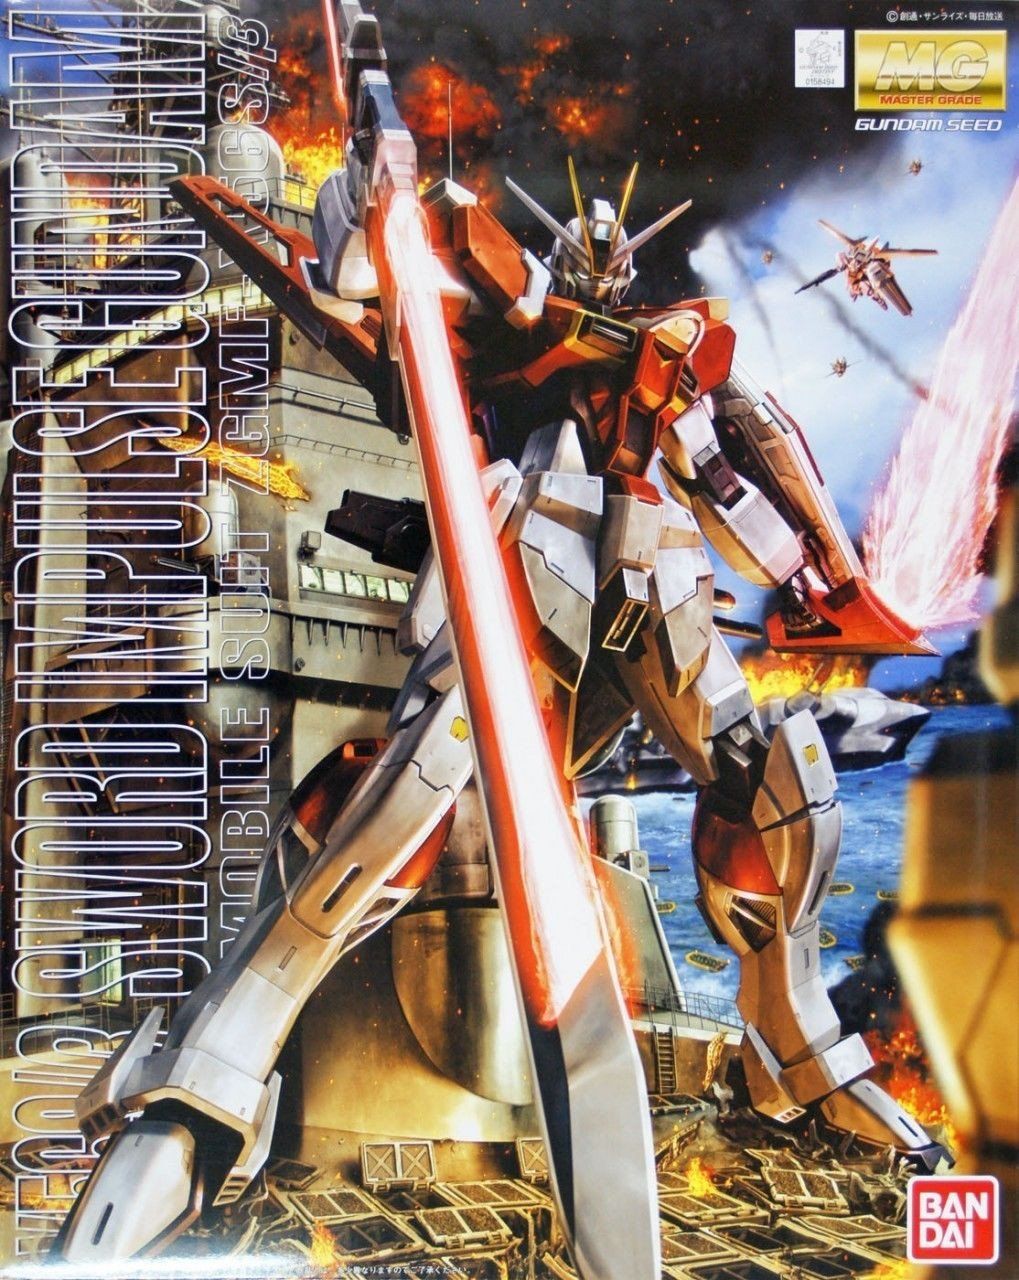 MG 1/100 Sword Impulse Gundam